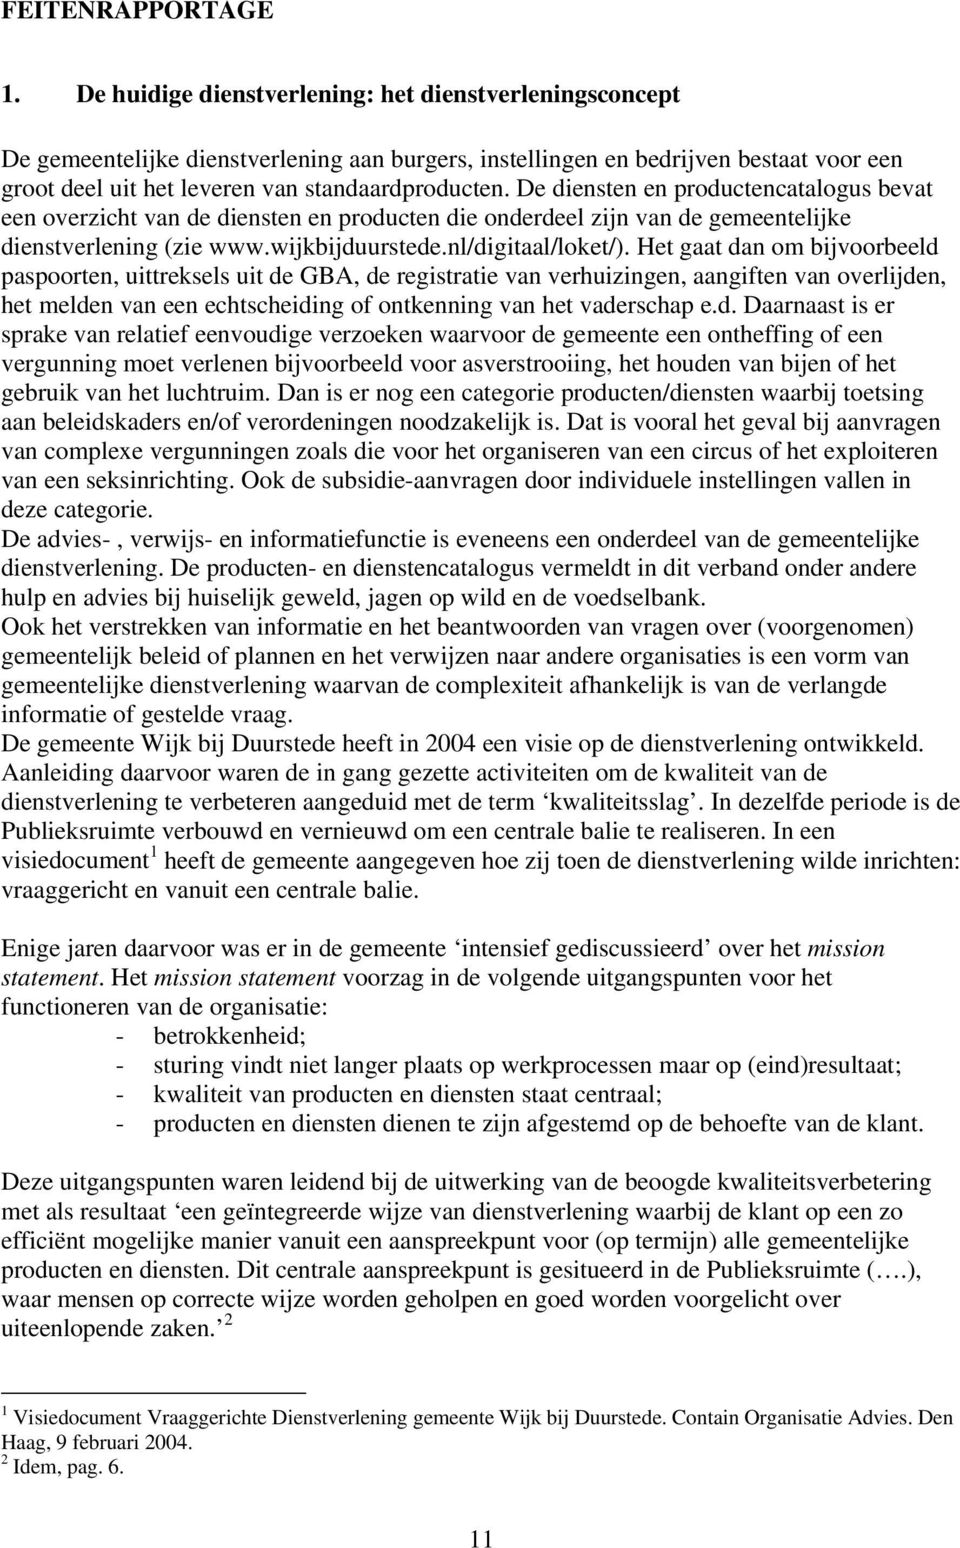 De diensten en productencatalogus bevat een overzicht van de diensten en producten die onderdeel zijn van de gemeentelijke dienstverlening (zie www.wijkbijduurstede.nl/digitaal/loket/).